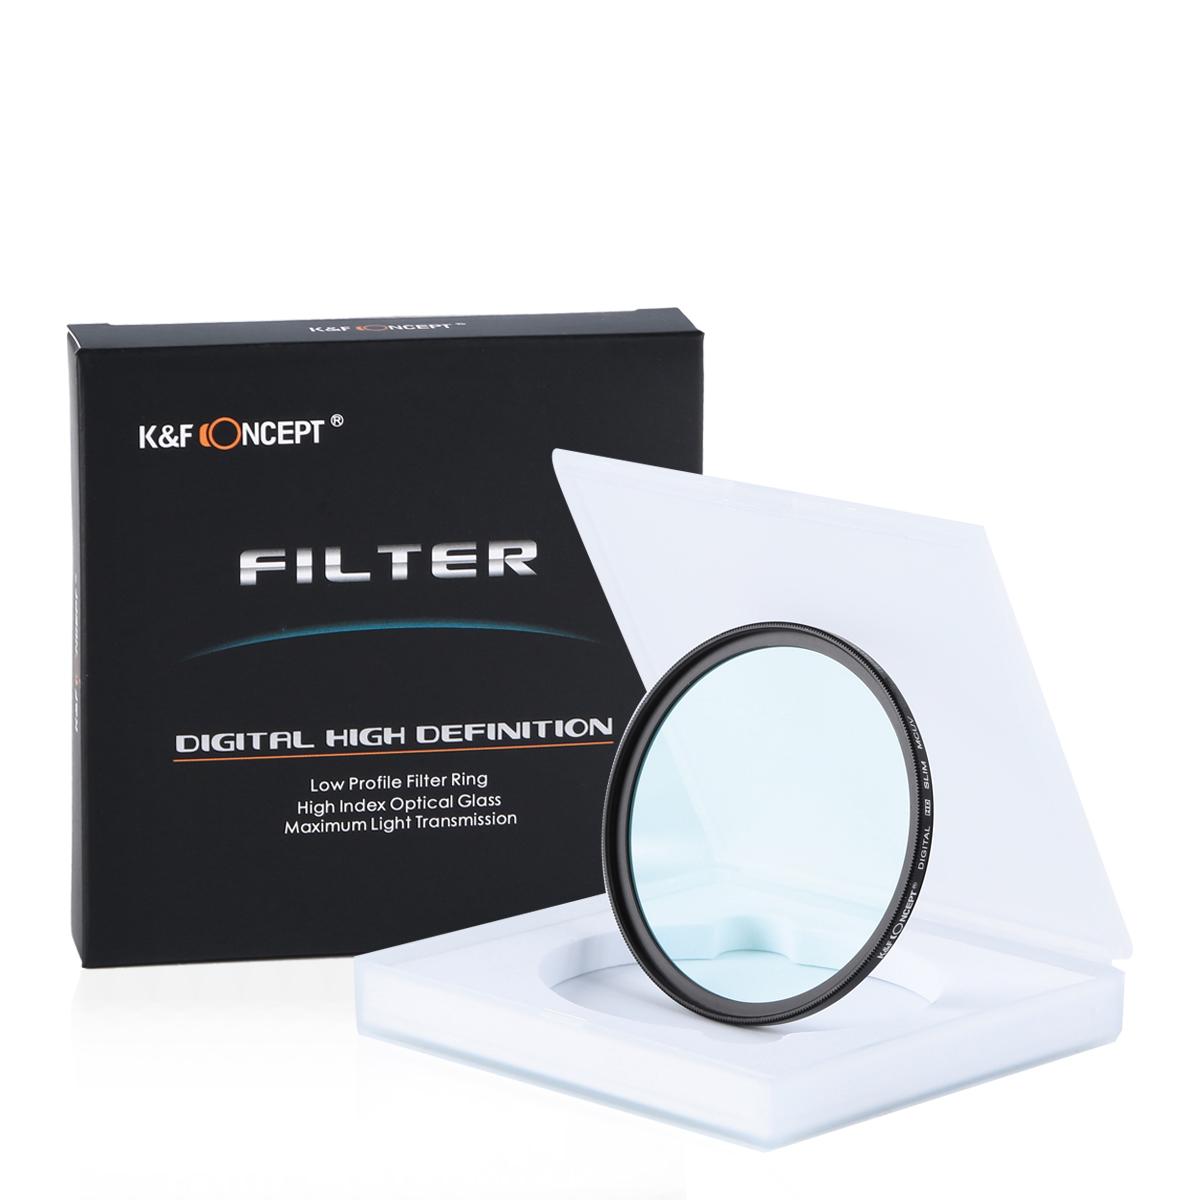 Kính Lọc Concept Filter UV Digital Hd 58mm nhập khẩu